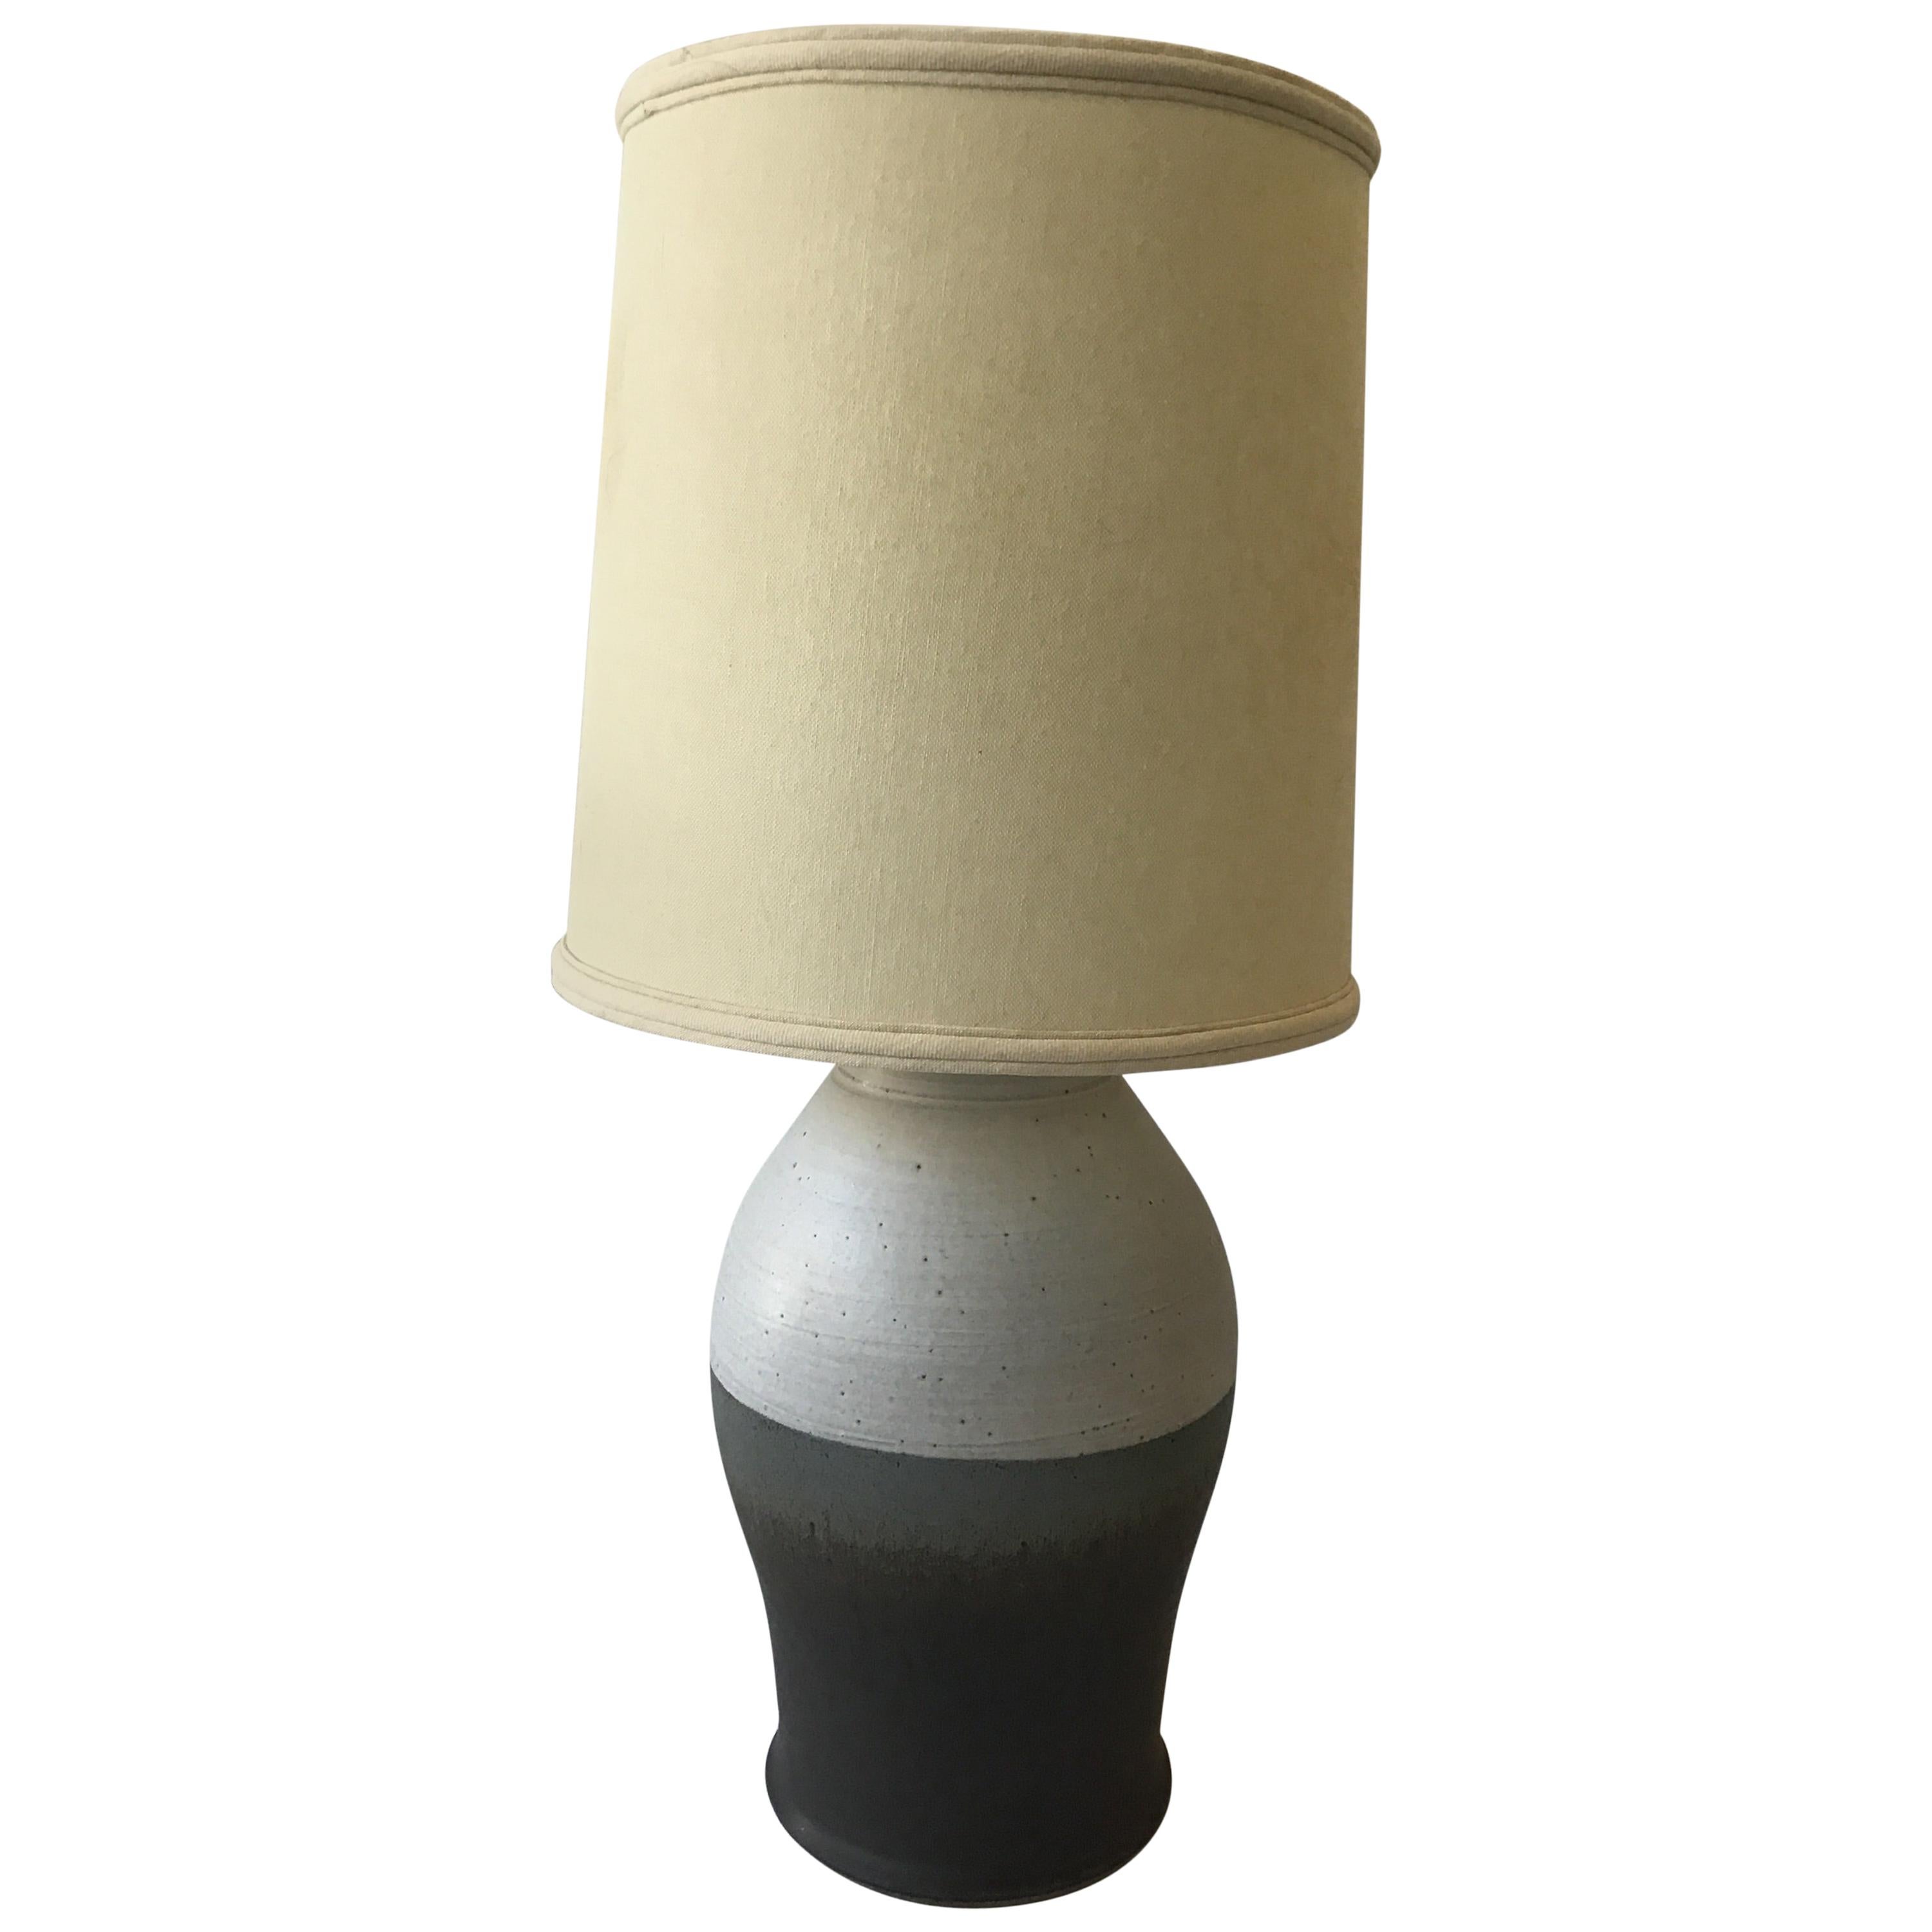 1960s Striped Ceramic Lamp